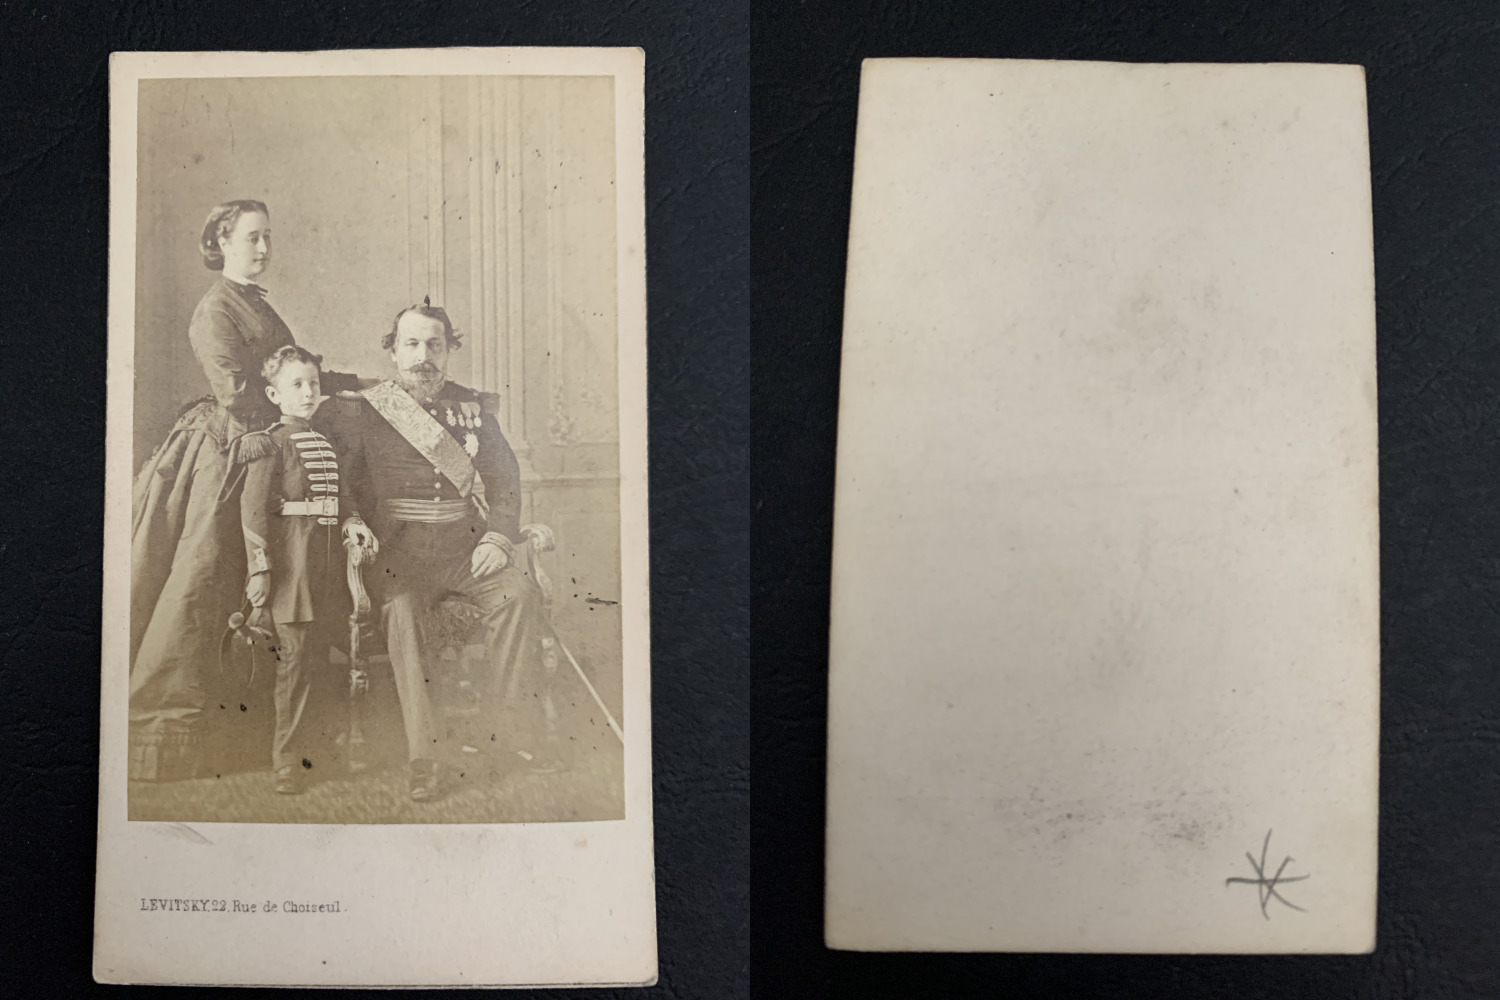 Levitsky, Paris, Napoleon III, Empress Eugenie and Their Son the Prince